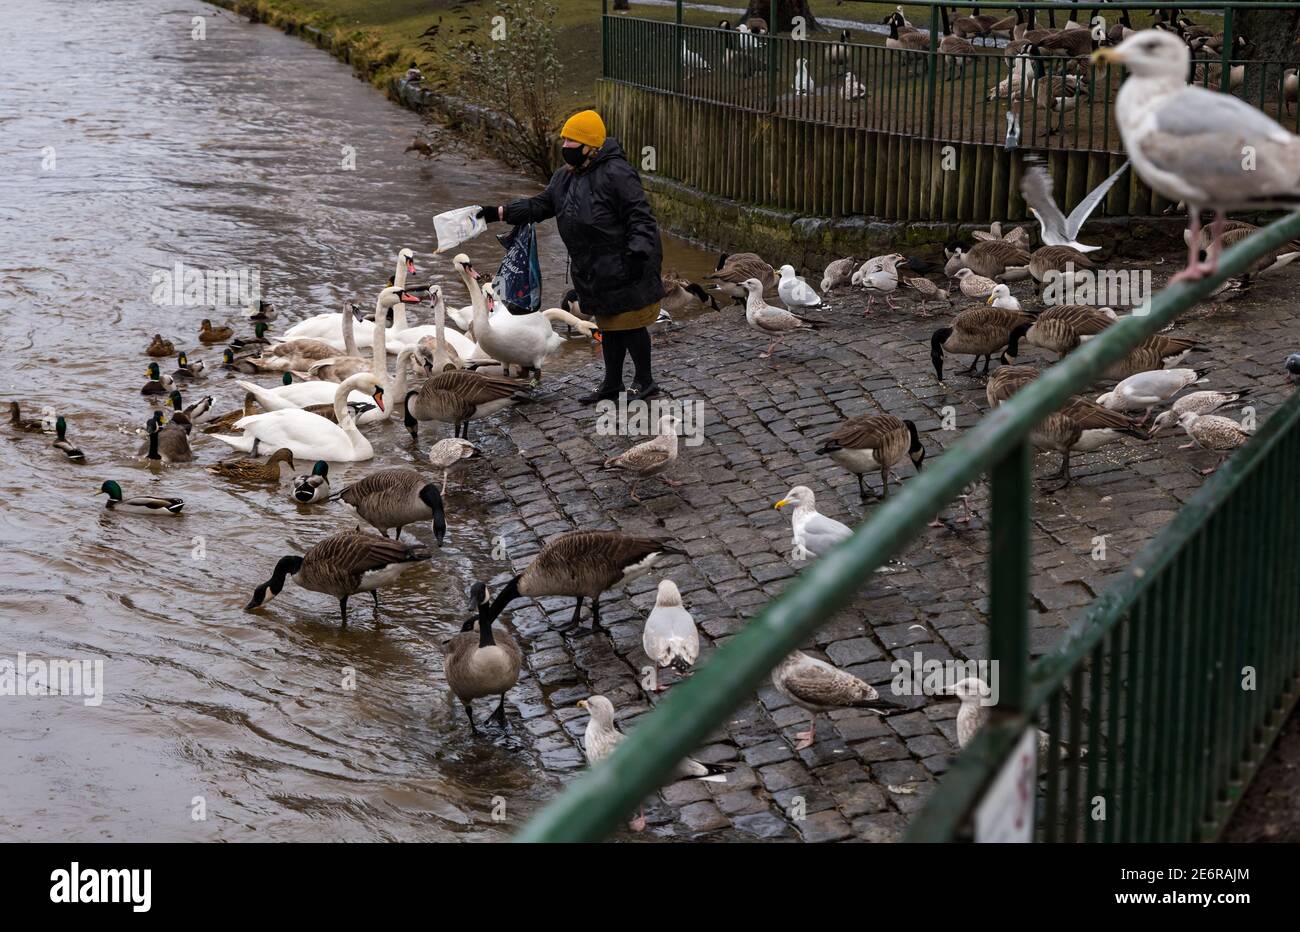 Musselburgh, East Lothian, Écosse, Royaume-Uni, 29 janvier 2021. Météo au Royaume-Uni : la pluie provoque l'ascension de la rivière Esk et l'alimentation de la faune. De fortes pluies, dont on prévoit plus au cours du week-end, se traduit par une rivière gonflée, avec le niveau d'eau presque jusqu'au sommet de la rive. Une femme portant un masque facial pendant le confinement en cas de pandémie nourrit les oiseaux locaux, y compris les bernaches du Canada, les cygnes et les goélands, malgré les avis à proximité qui conseillent aux gens de ne pas nourrir la sauvagine Banque D'Images